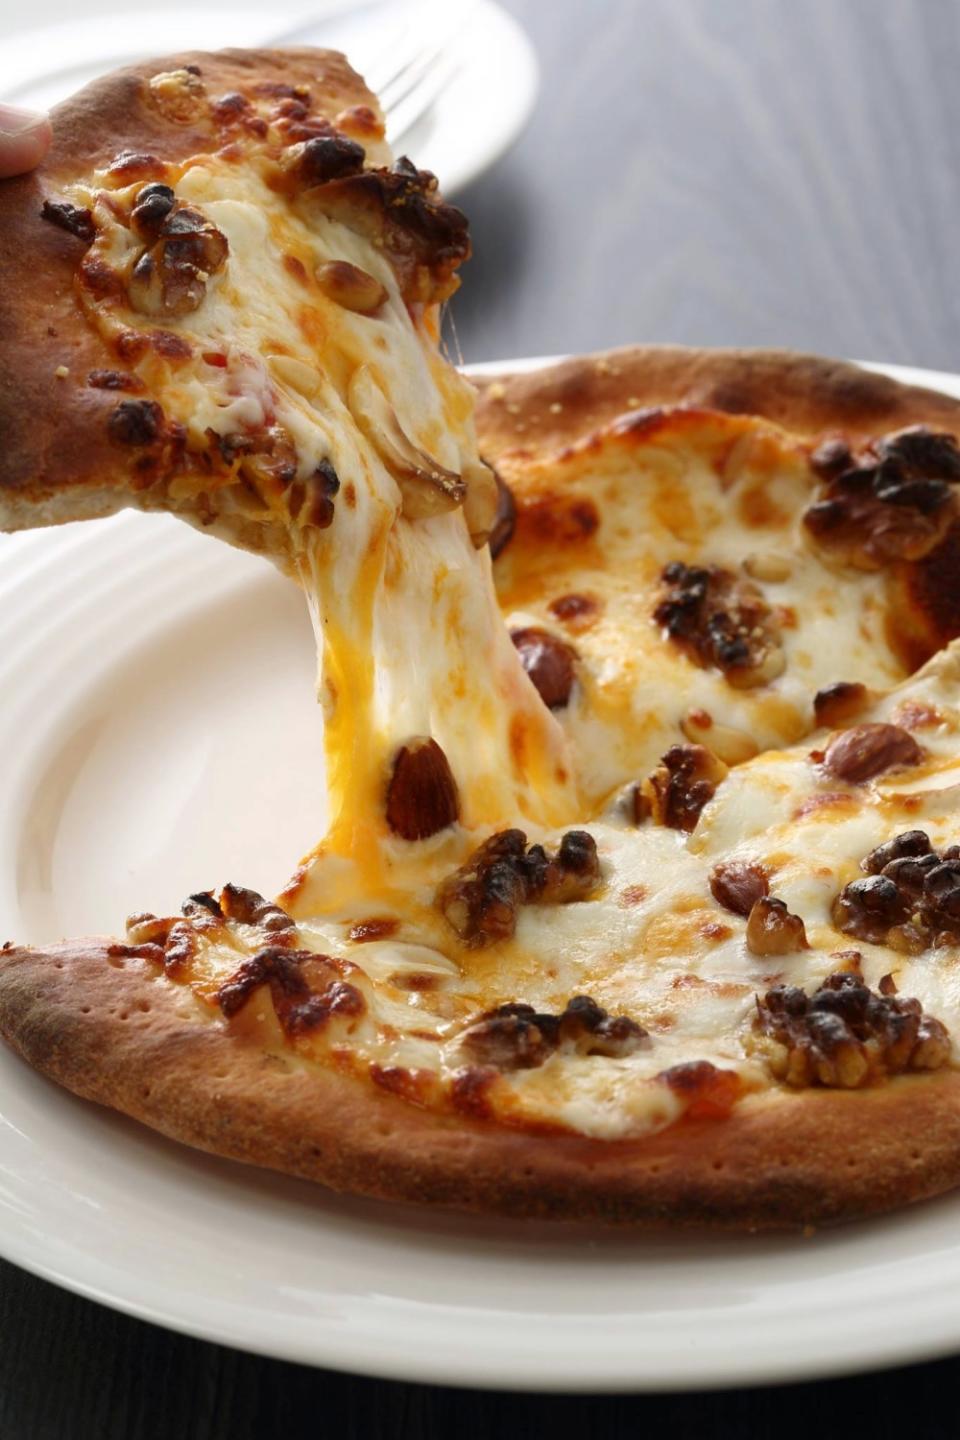 烤得金黃香酥的餅皮、牽絲的頂部餡料，正是麥香園手做披薩的魅力。
